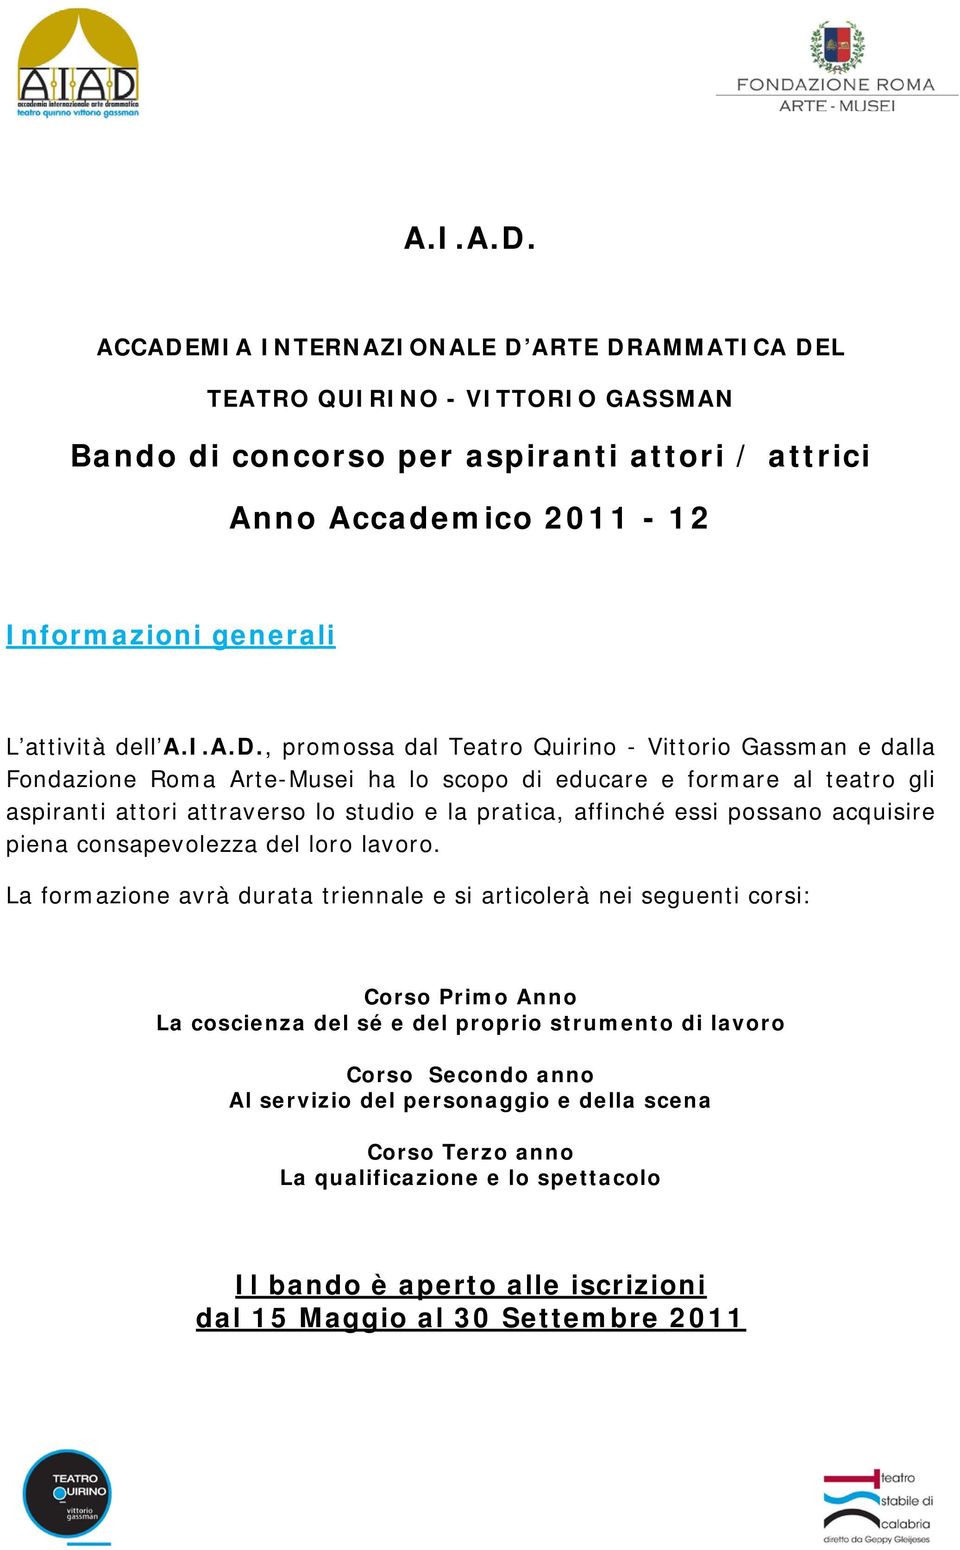 promossa dal Teatro Quirino - Vittorio Gassman e dalla Fondazione Roma Arte-Musei ha lo scopo di educare e formare al teatro gli aspiranti attori attraverso lo studio e la pratica, affinché essi